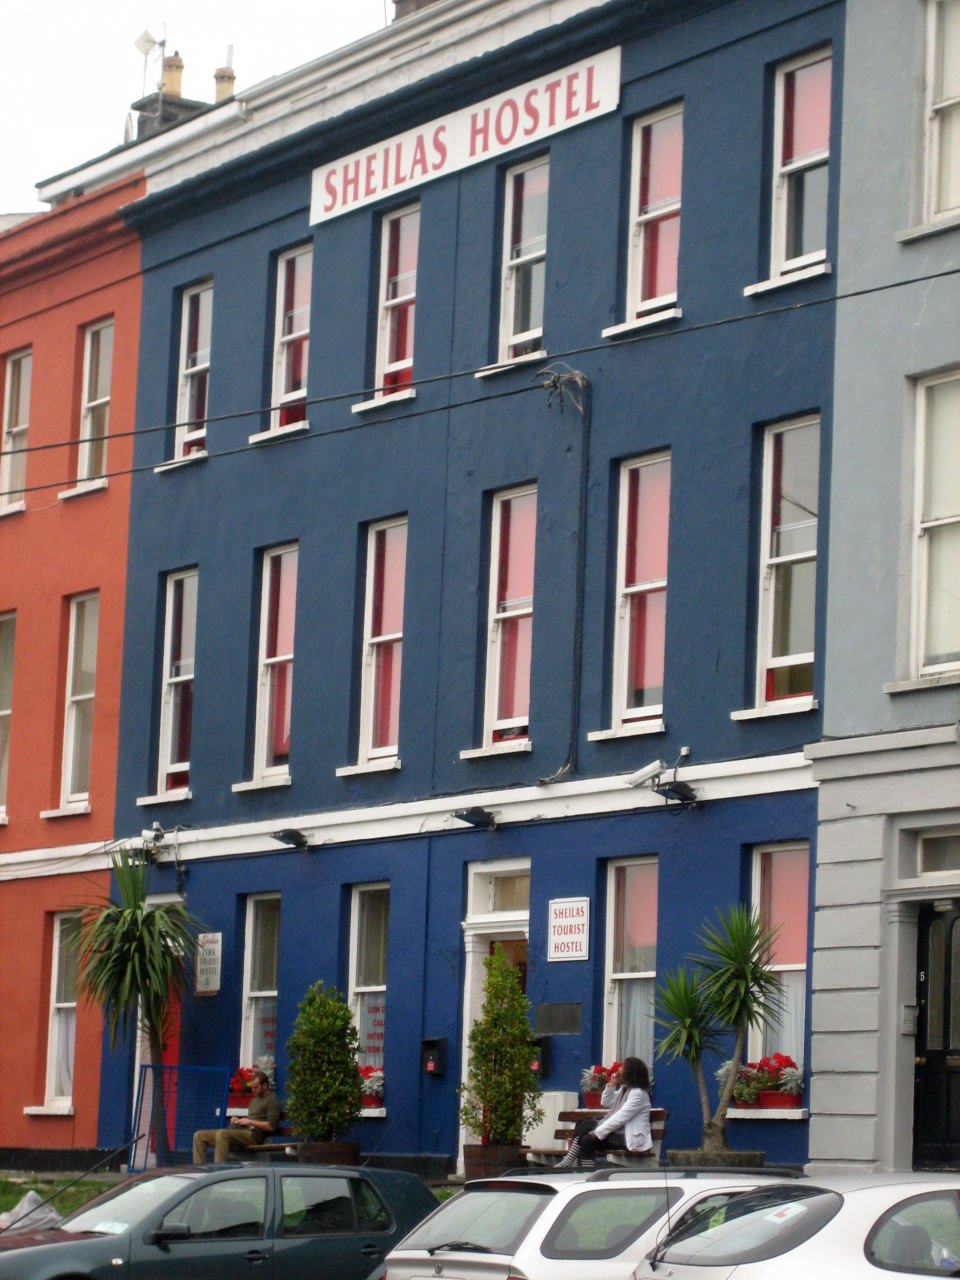 Sheila's hostel à Cork (Auberge de jeunesse))